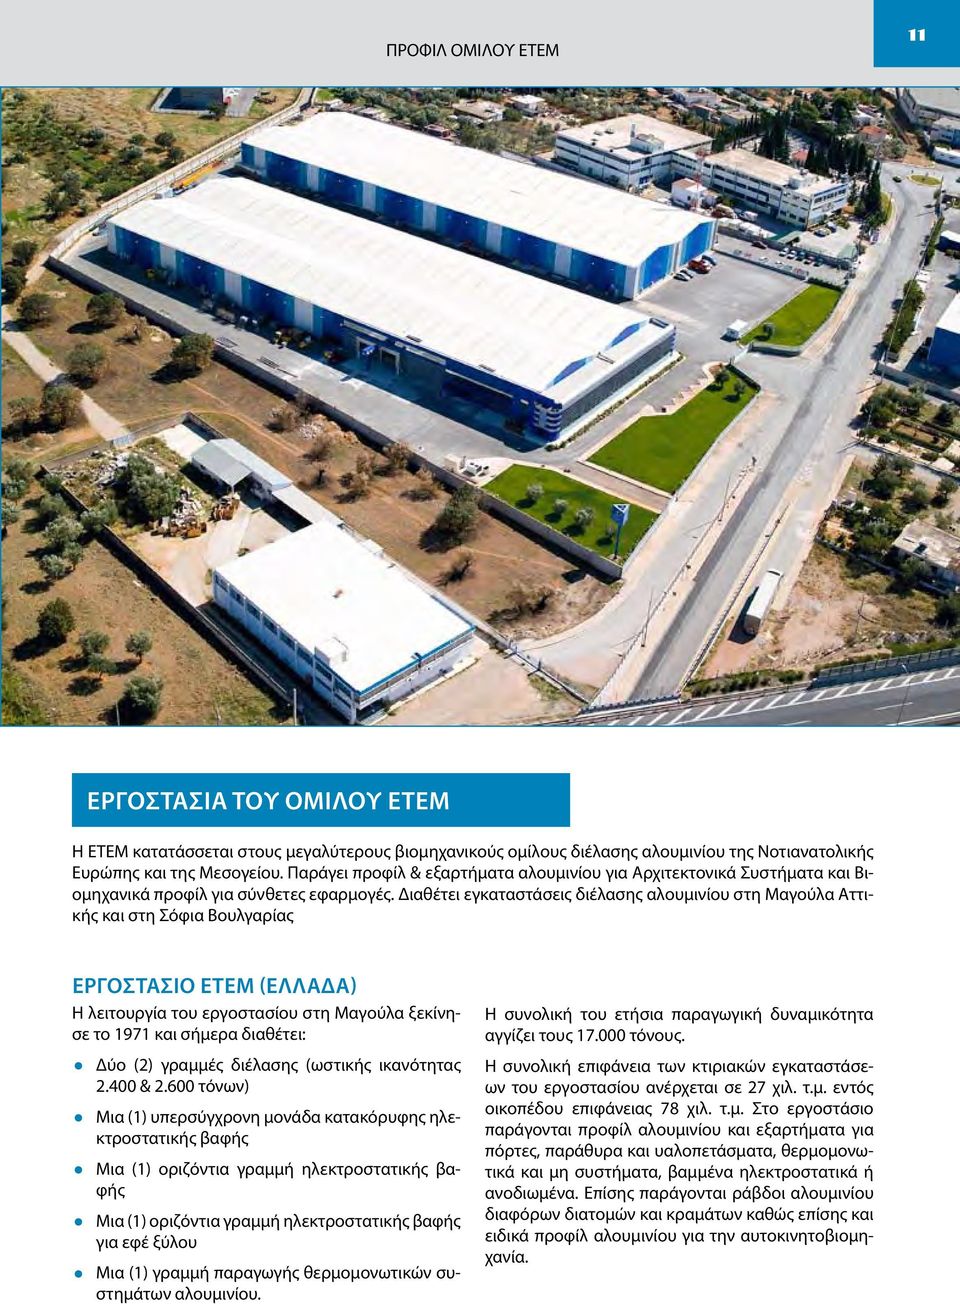 Διαθέτει εγκαταστάσεις διέλασης αλουμινίου στη Μαγούλα Αττικής και στη Σόφια Βουλγαρίας Εργοστάσιο ΕΤΕΜ (Ελλάδα) Η λειτουργία του εργοστασίου στη Μαγούλα ξεκίνησε το 1971 και σήμερα διαθέτει: Δύο (2)